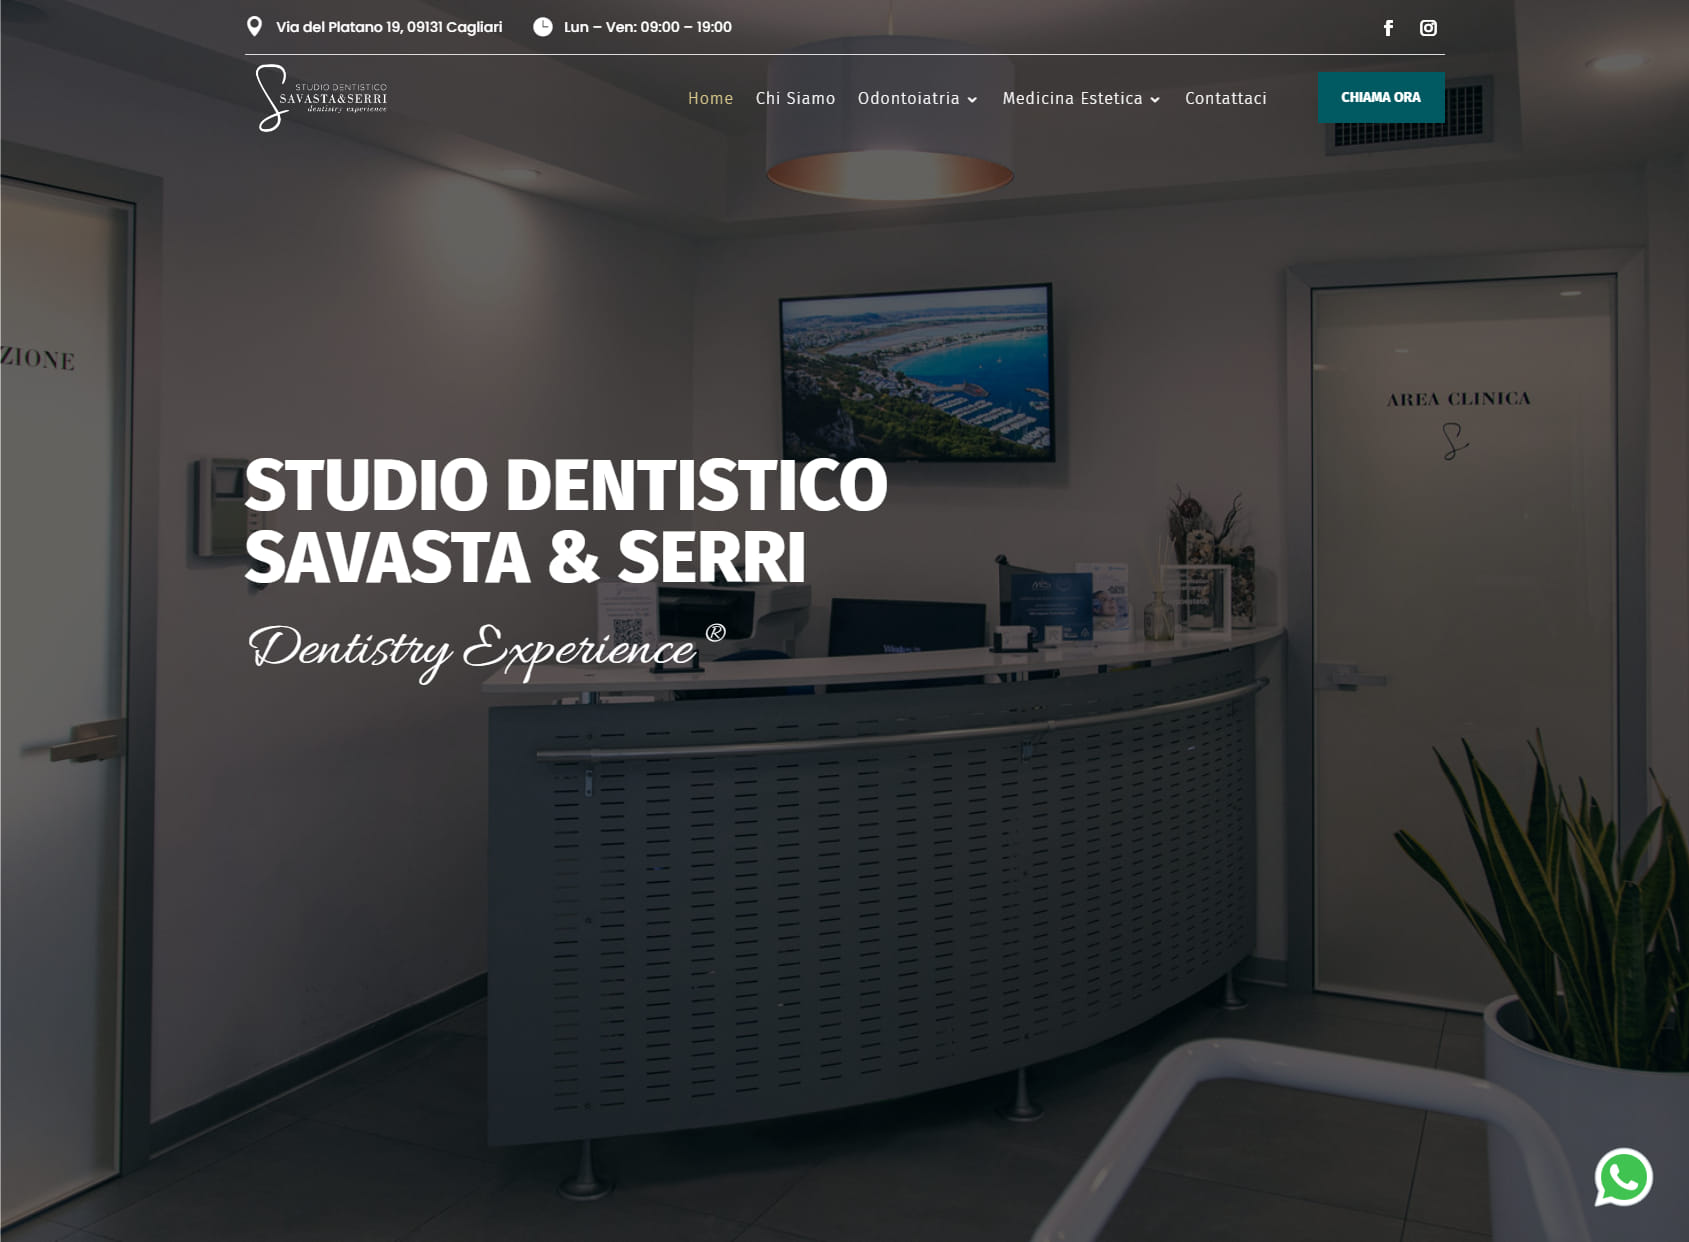 Studio Dentistico Savasta & Serri